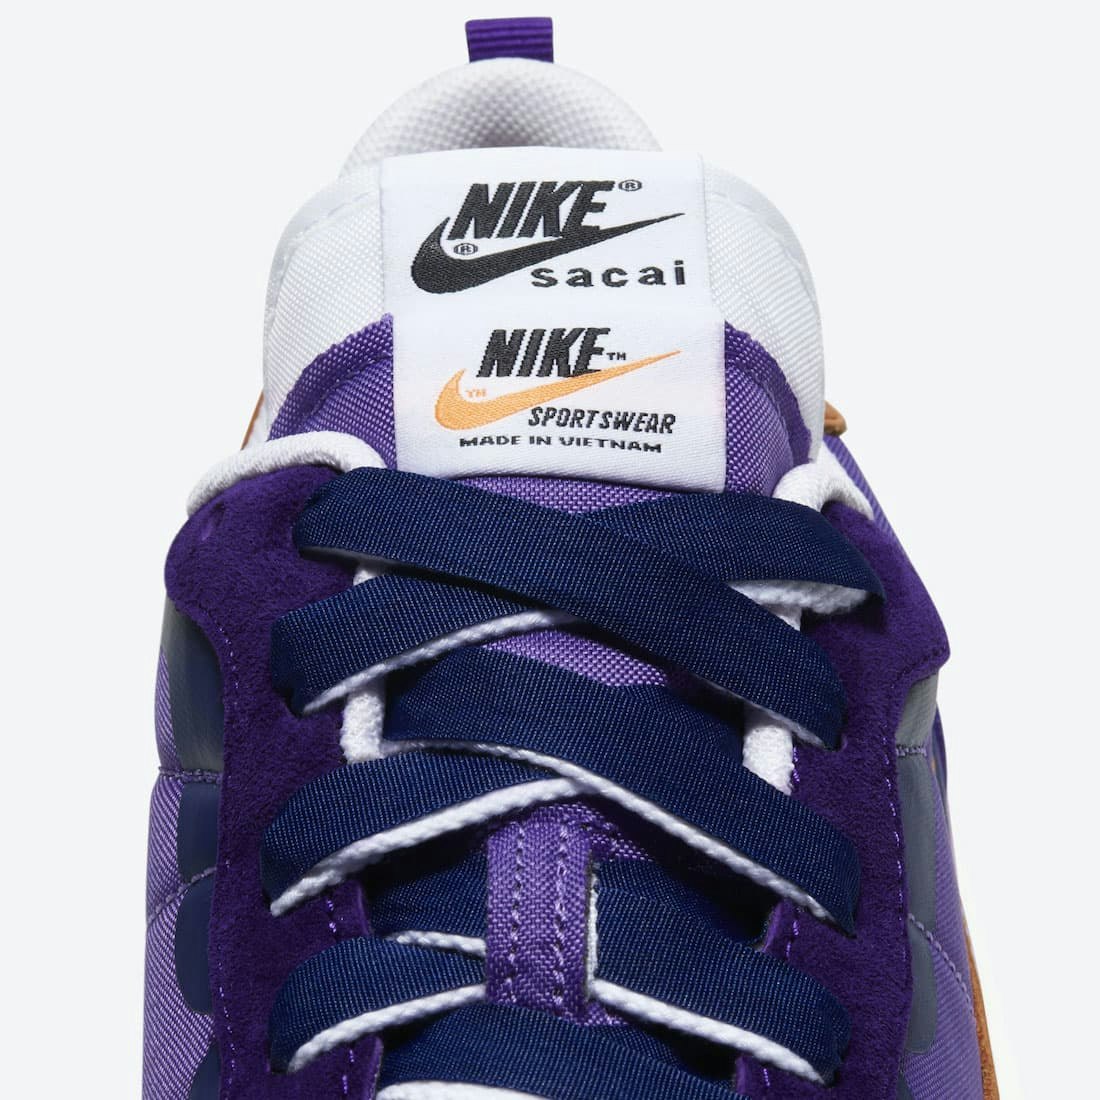 Sacai x Nike VaporWaffle "Dark Iris"